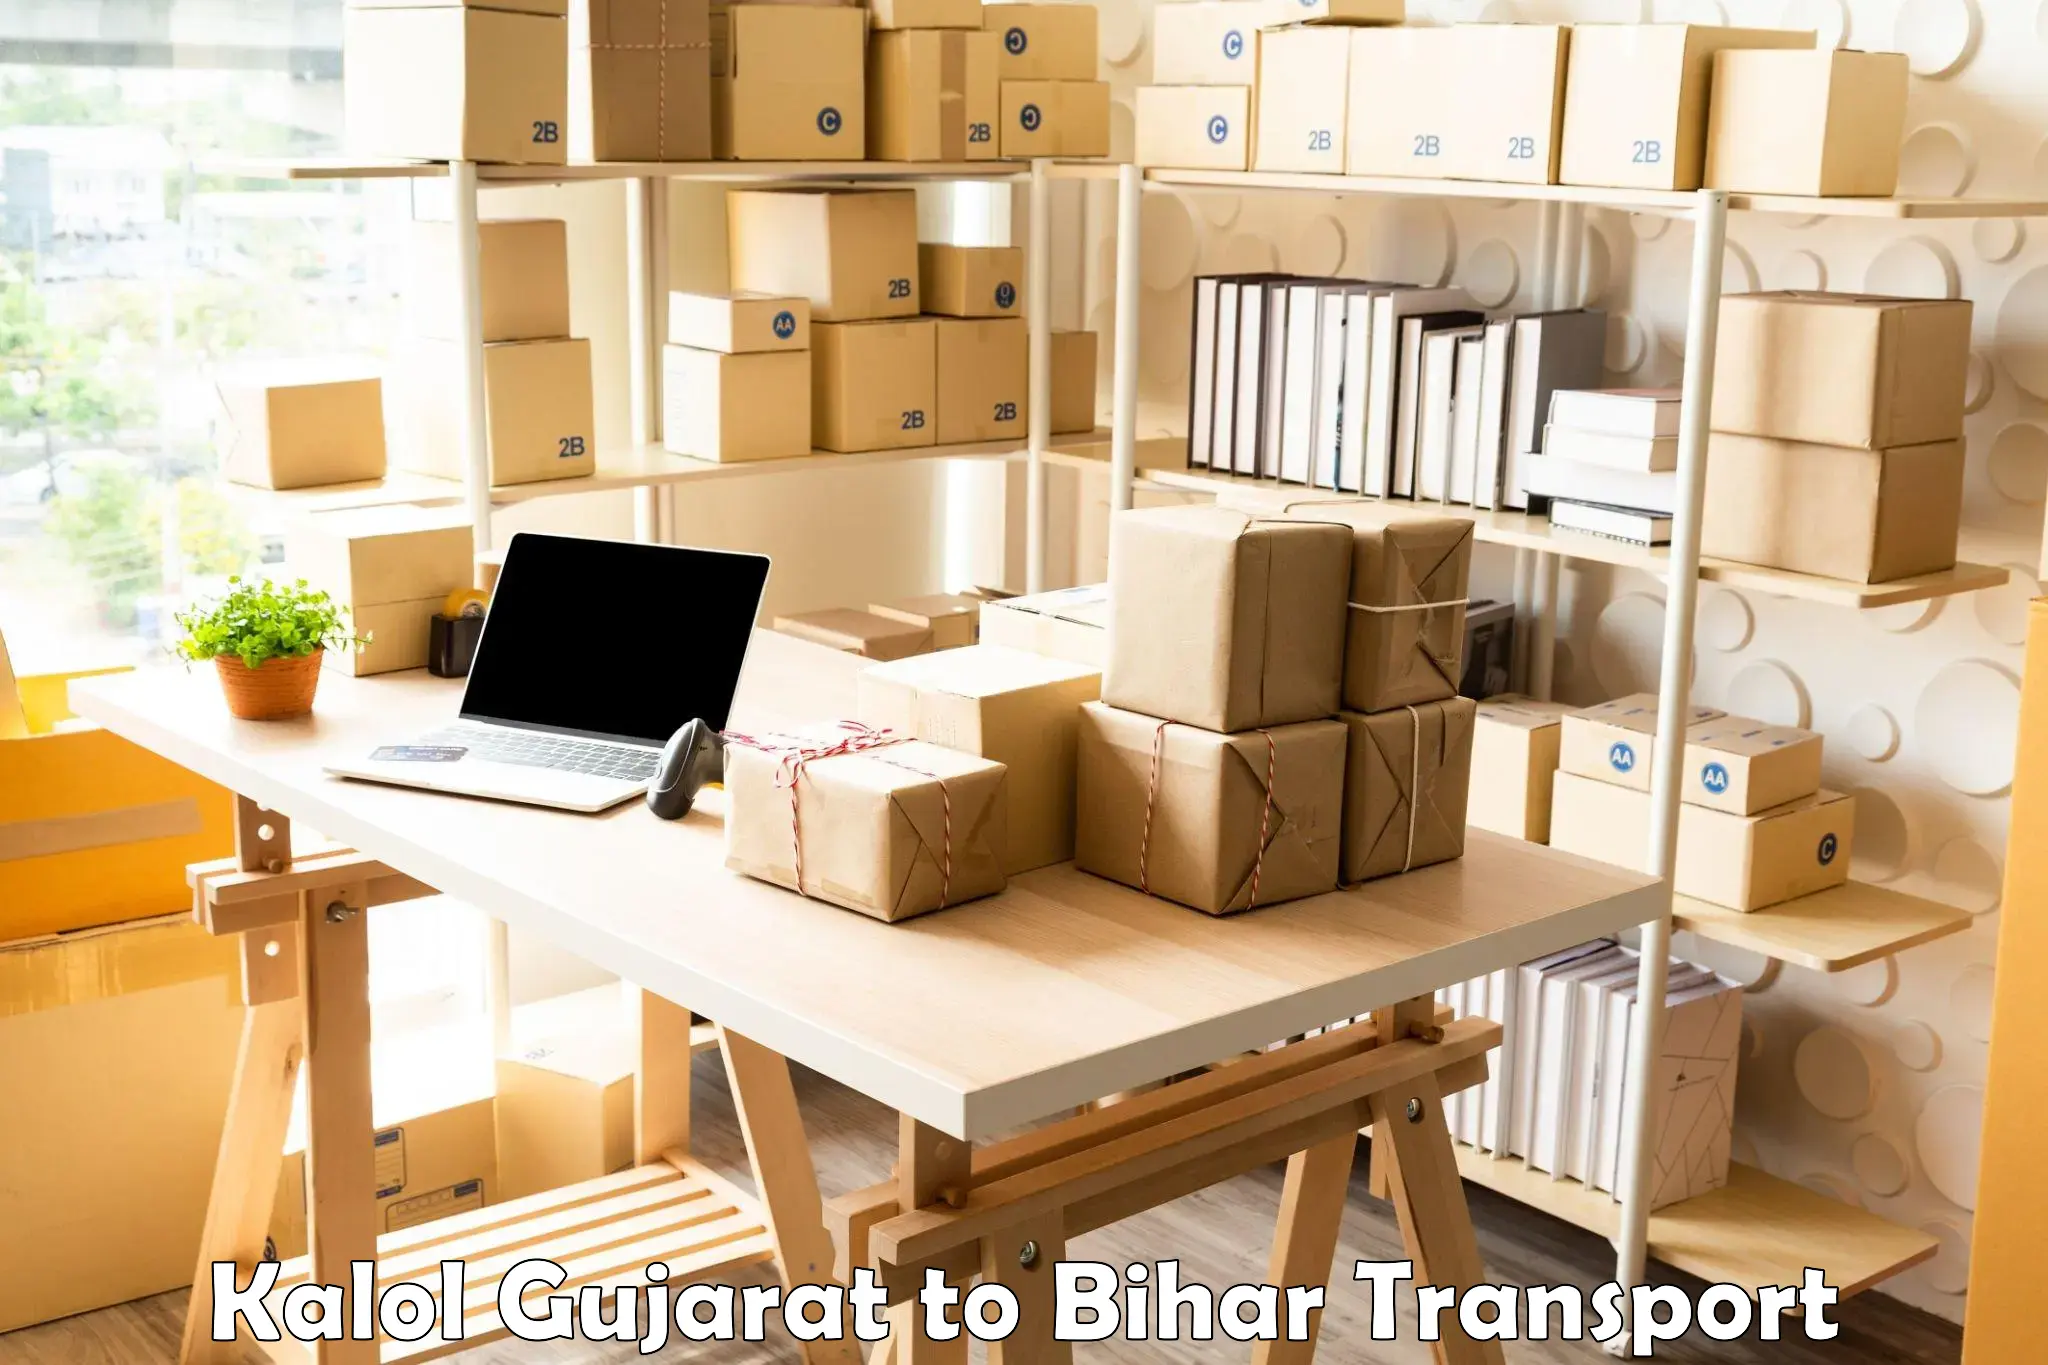 International cargo transportation services Kalol Gujarat to Dinara